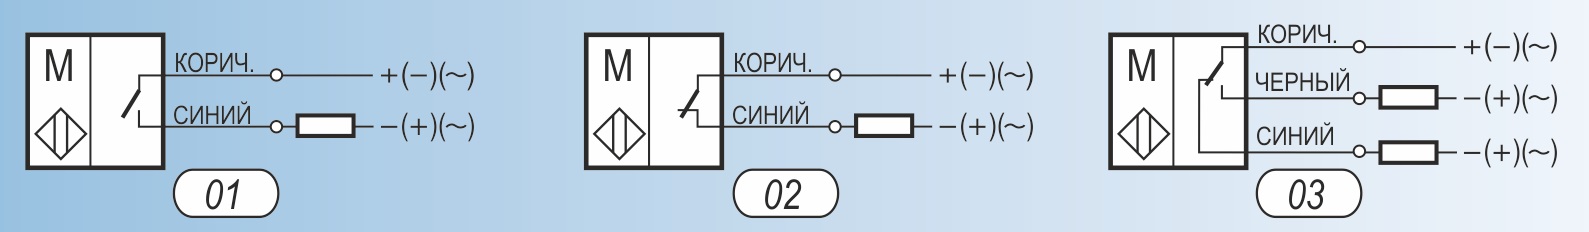 схема подключения датчиков ДКСЛ-Н1-Н2-Н3